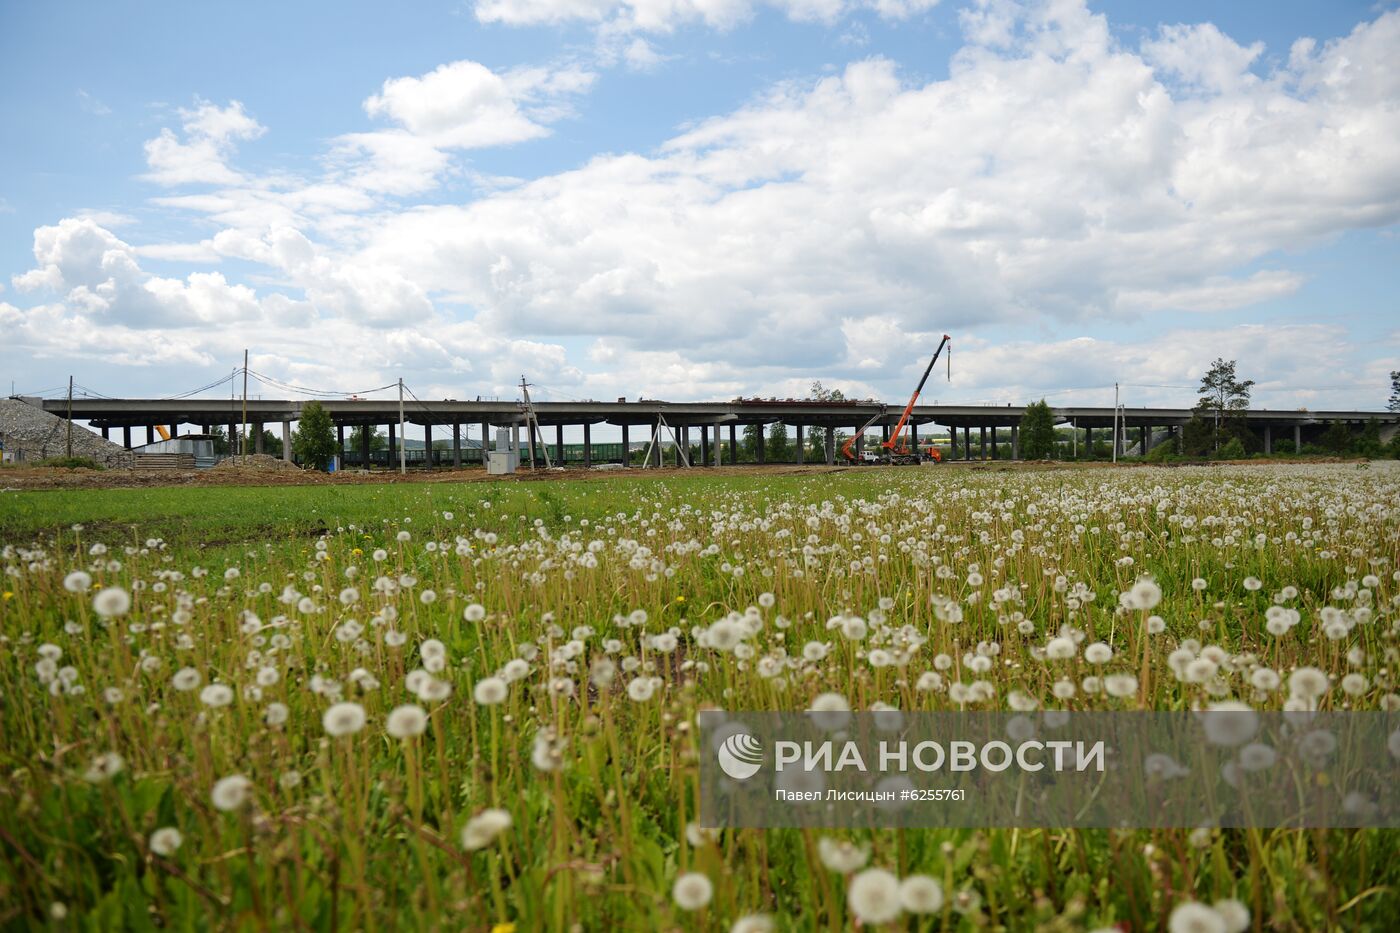 Строительство Екатеринбургской кольцевой автомобильной дороги